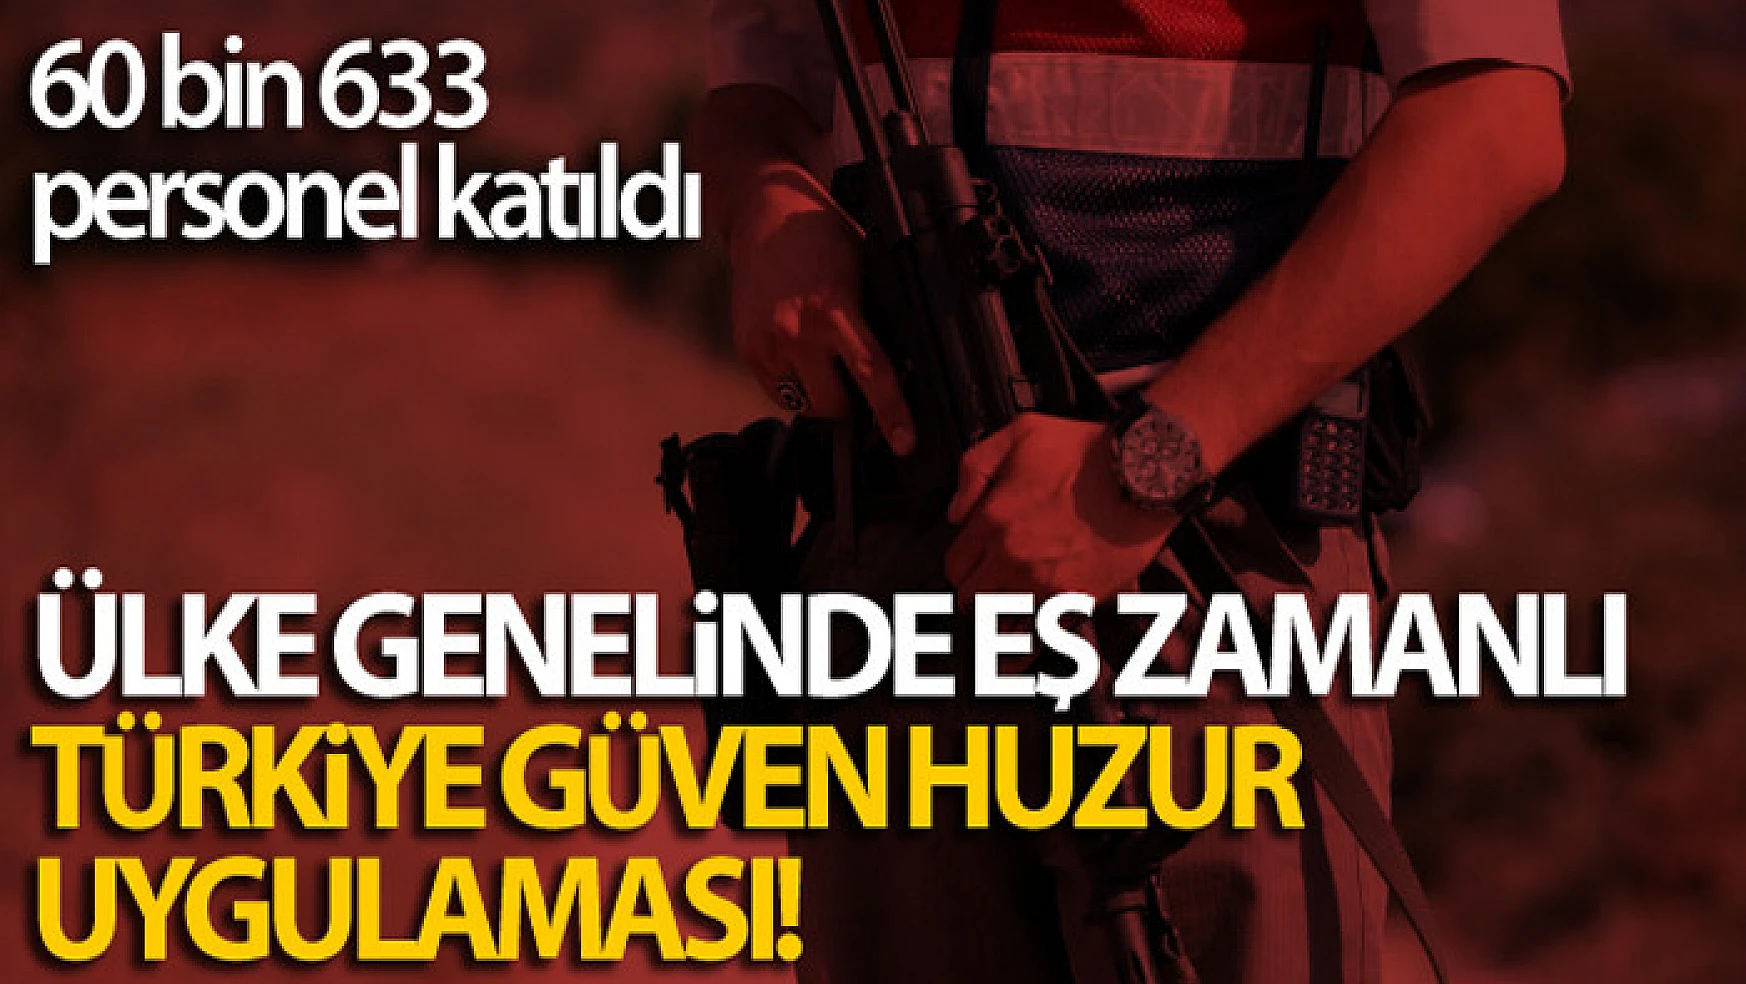 Ülke genelinde eş zamanlı Türkiye Güven Huzur Uygulaması!